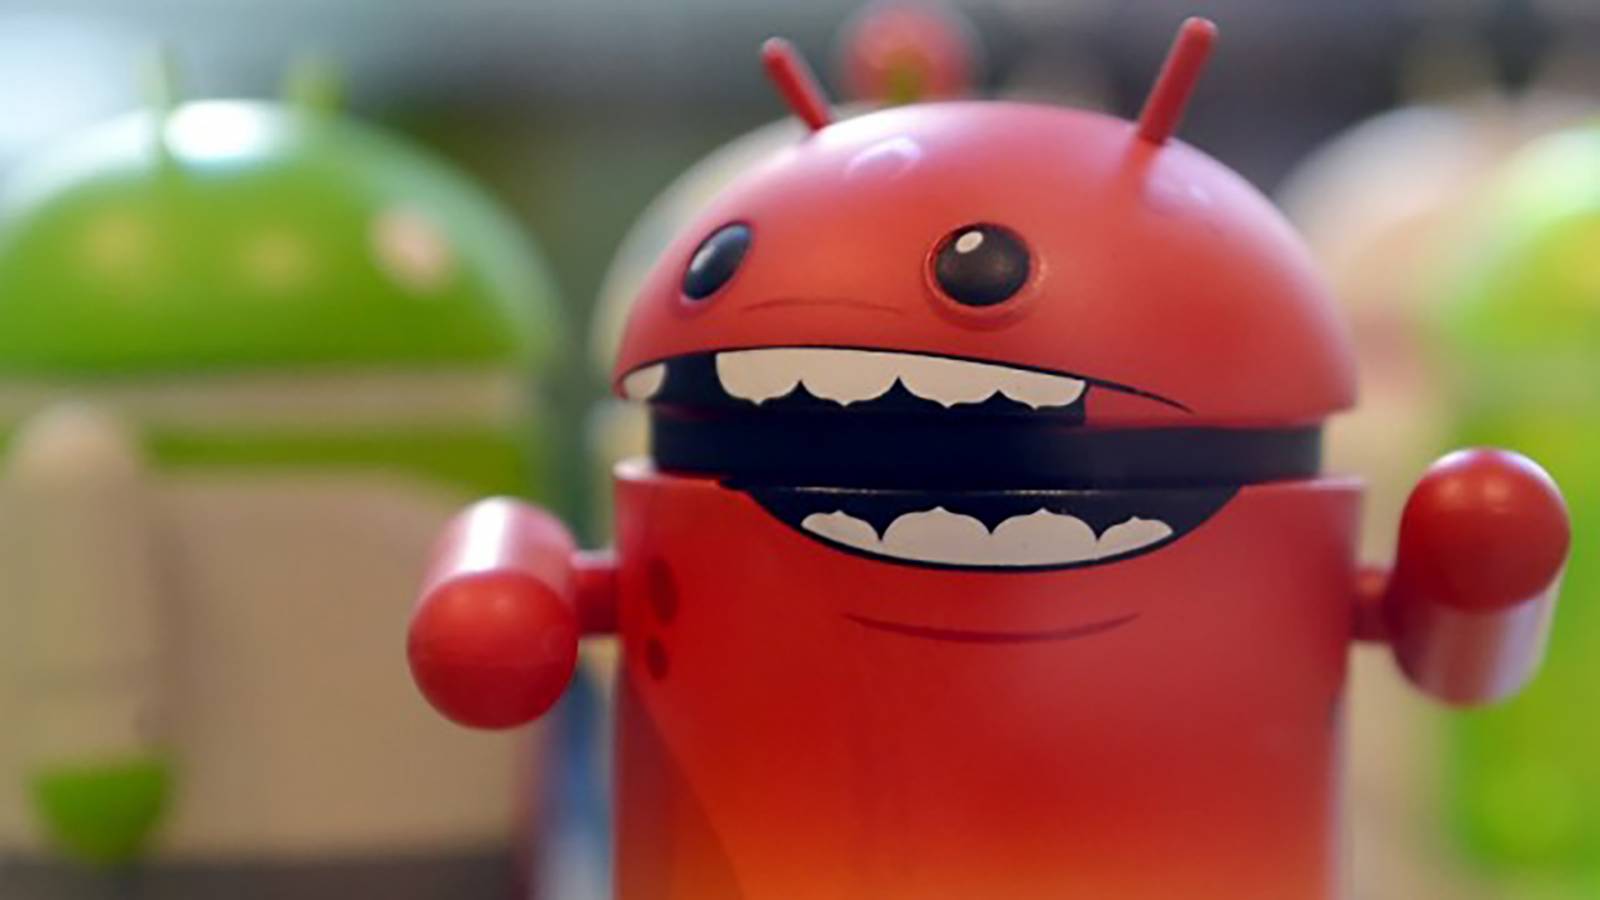 Android Vizat Pericol MAJOR Confirmat IBM Milioane Oameni Pericol